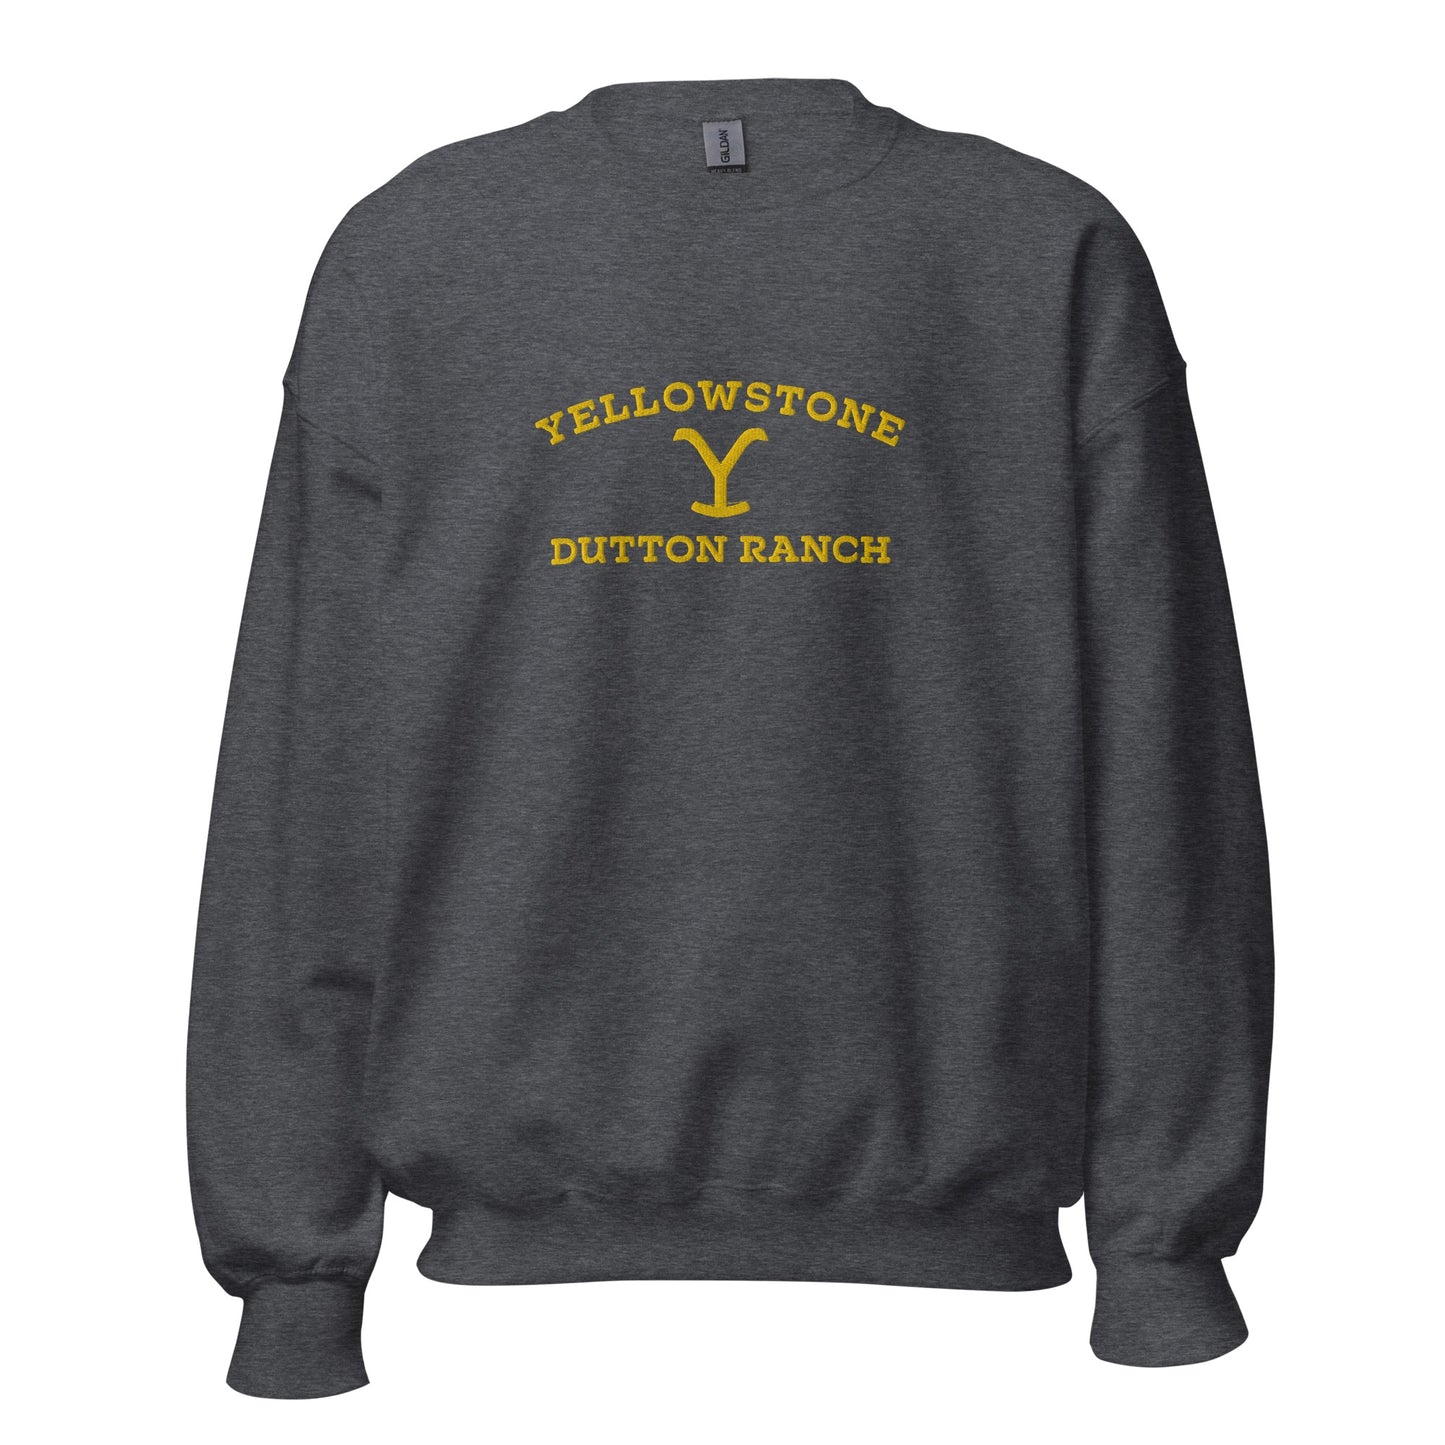 Yellowstone Dutton Ranch Sweatshirt mit Stickerei